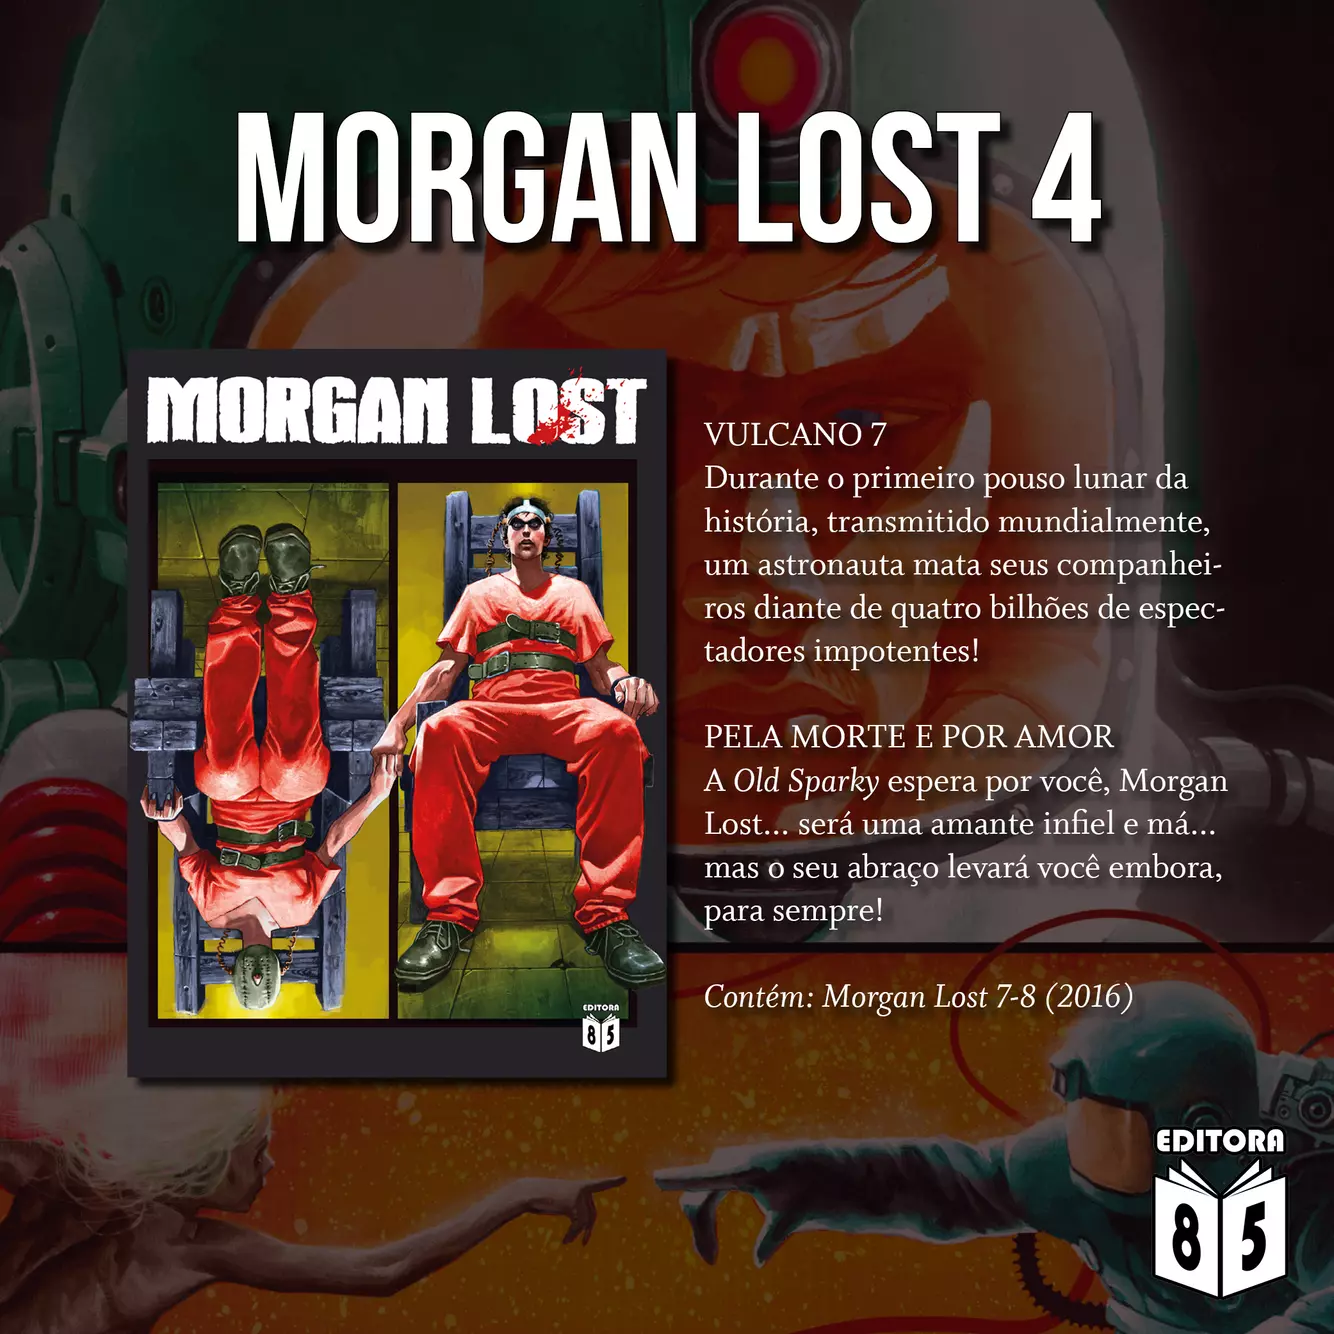 morgan lost 2